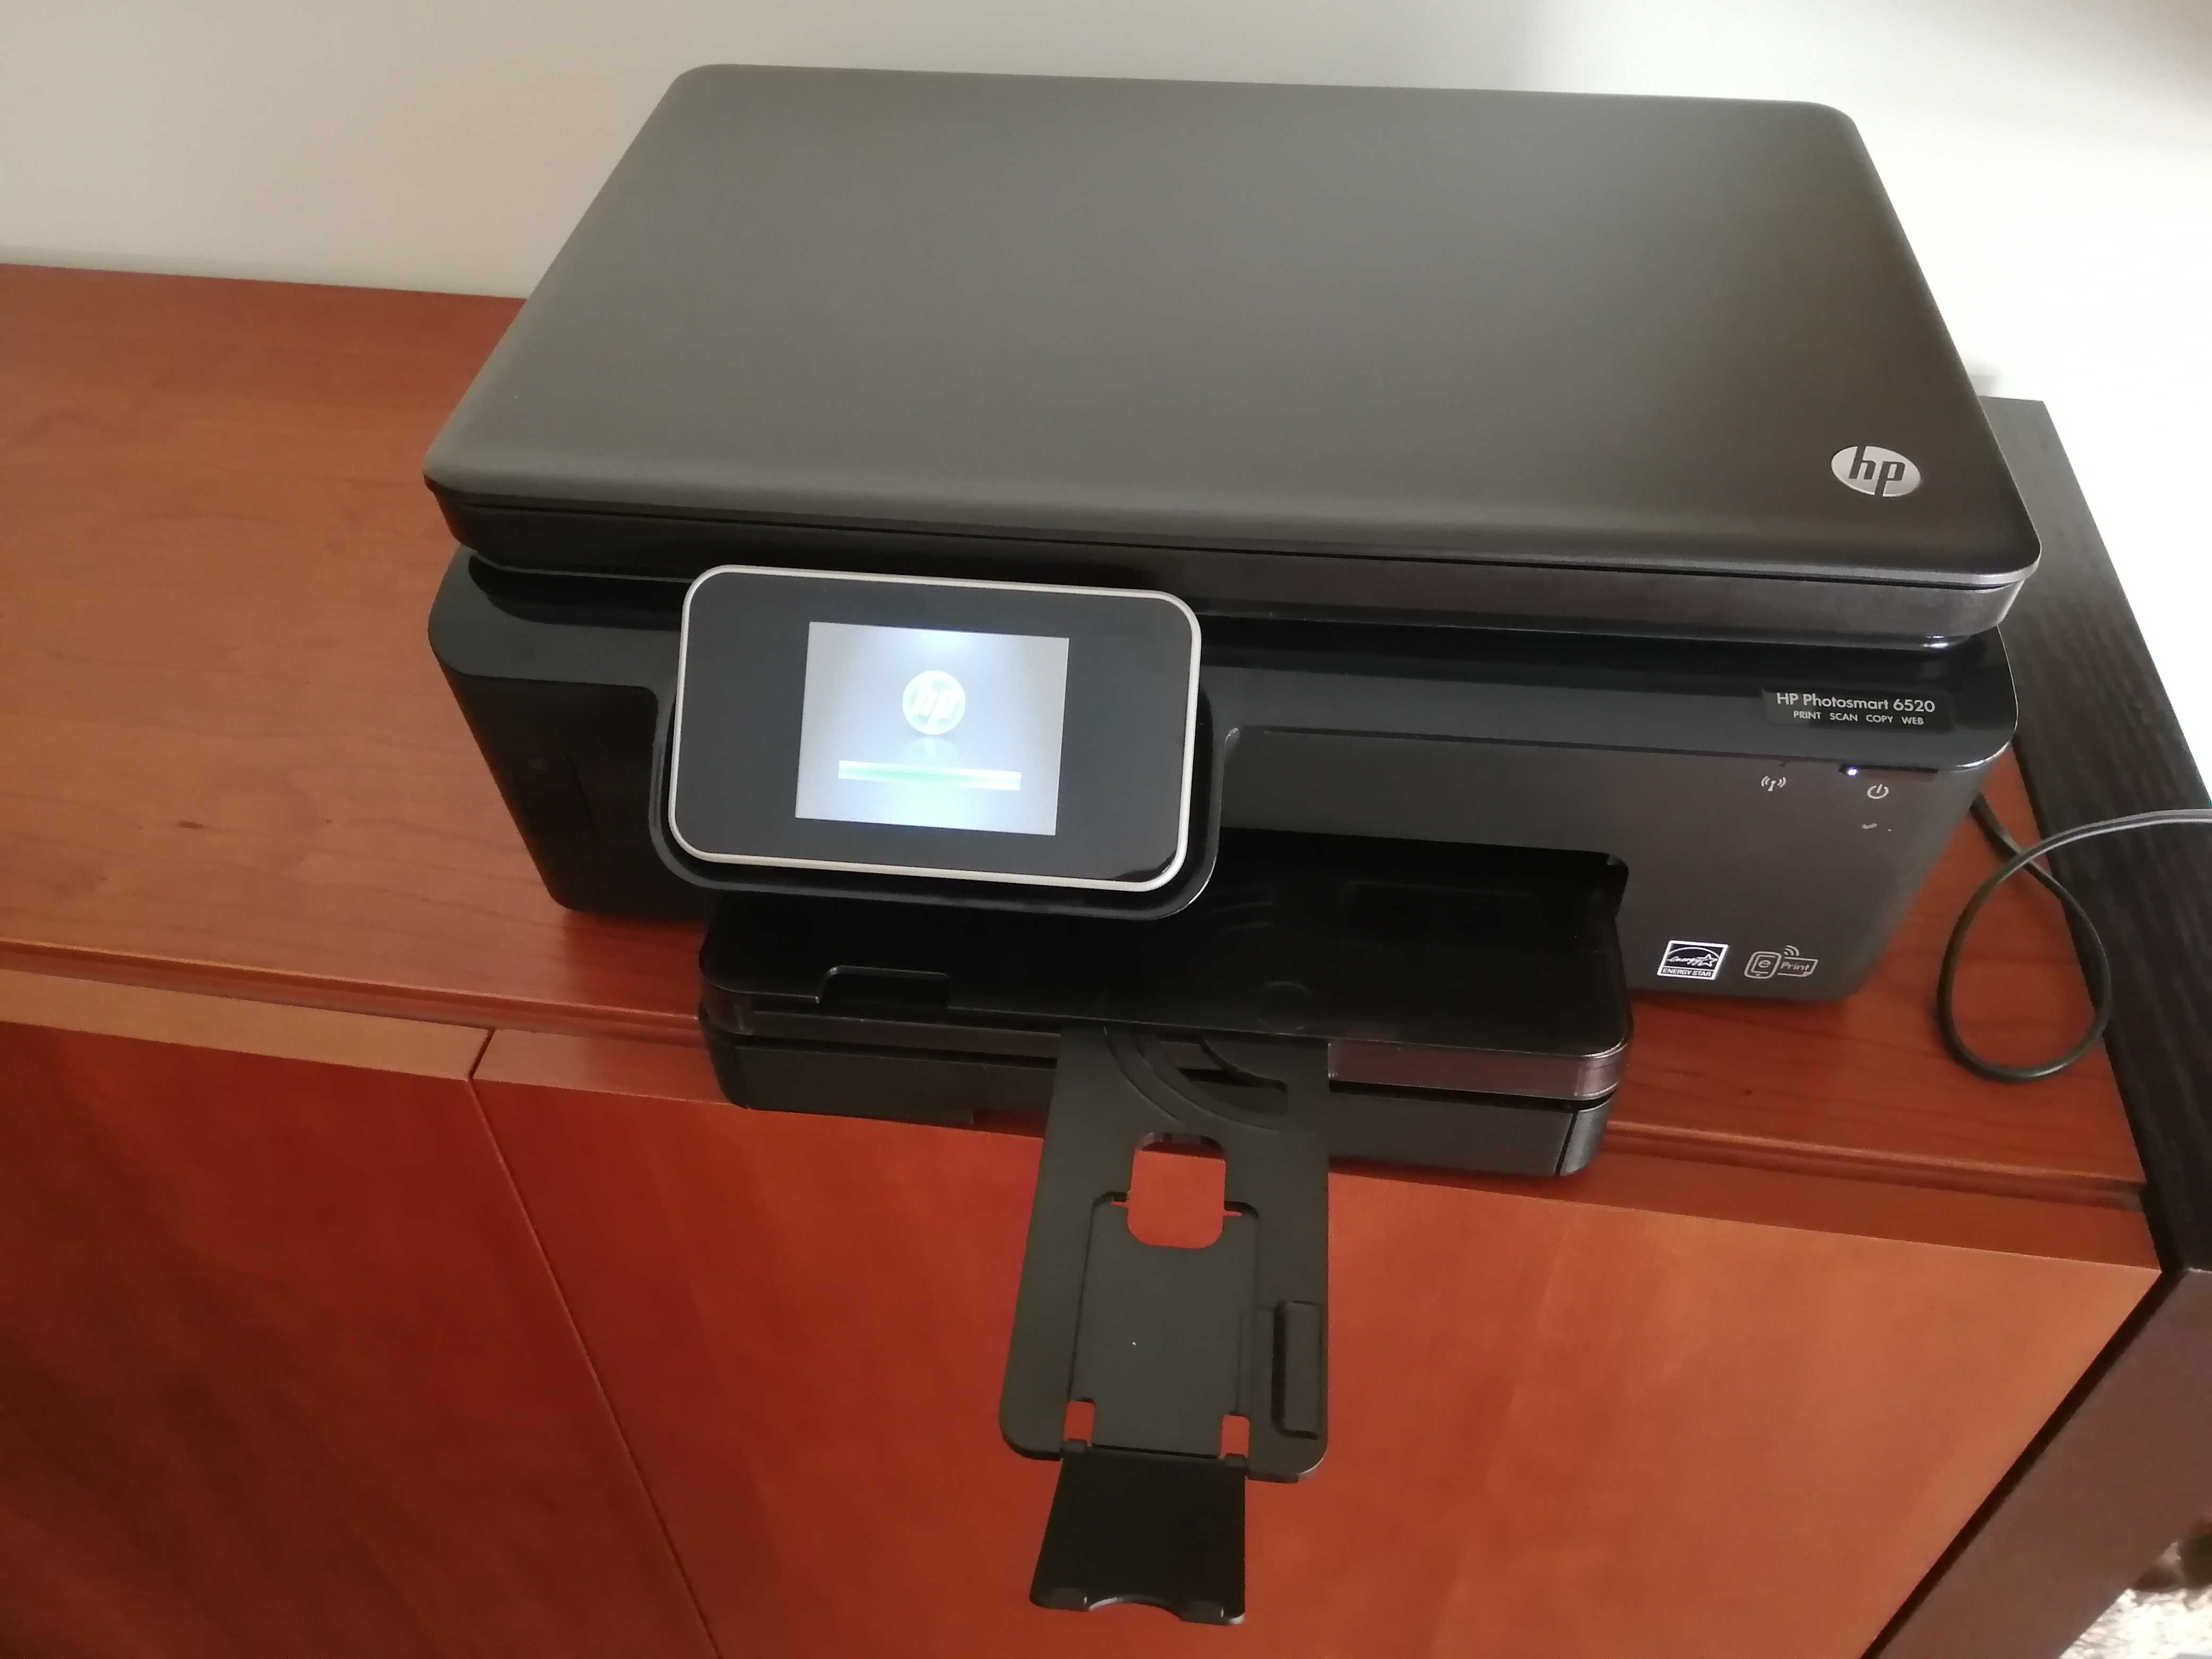 Impressora HP Photosmart 6520